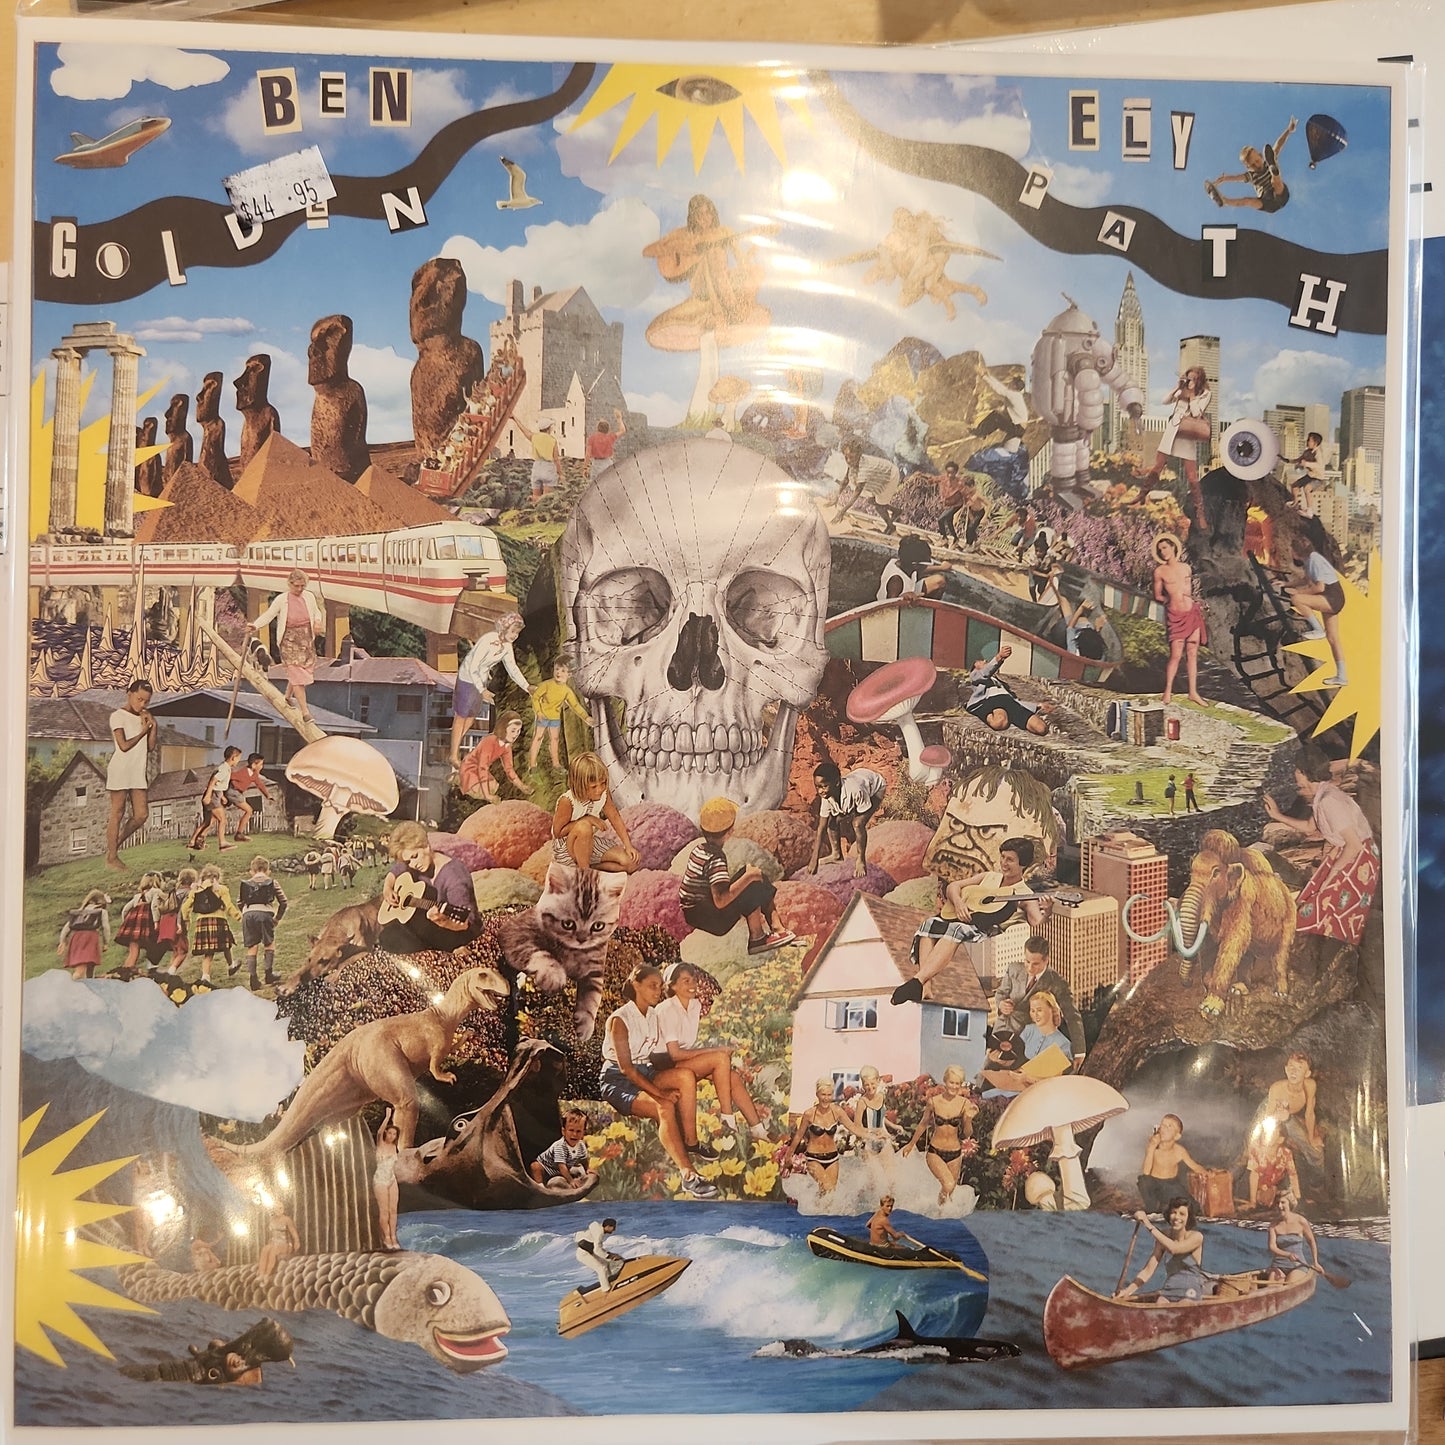 Ben Ely - The Golden Path - Vinyl LP